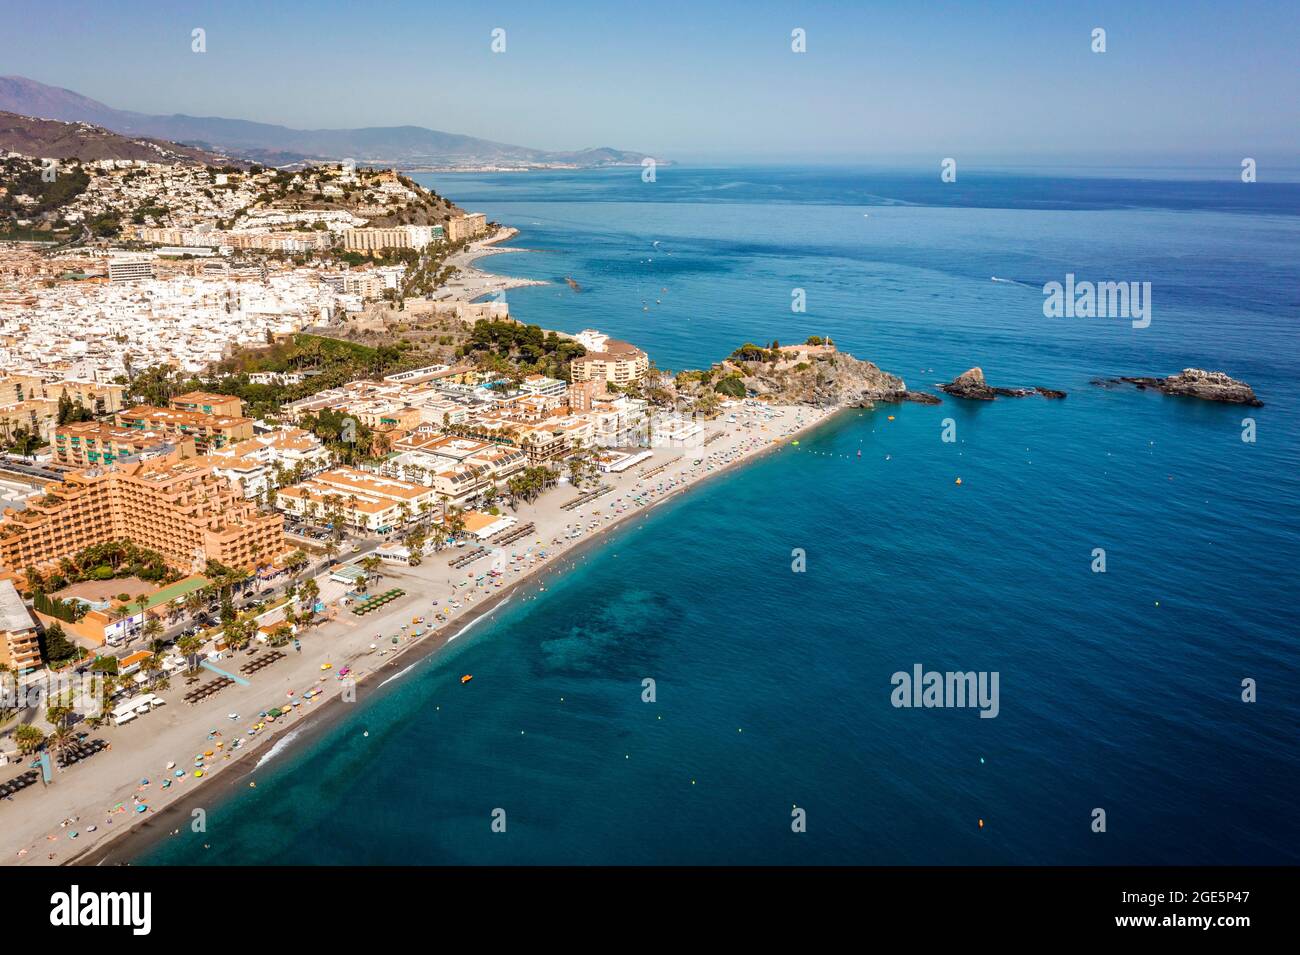 Vista aérea de la costa turística de Almunecar por el Mar Mediterráneo, Andalucía, España Foto de stock